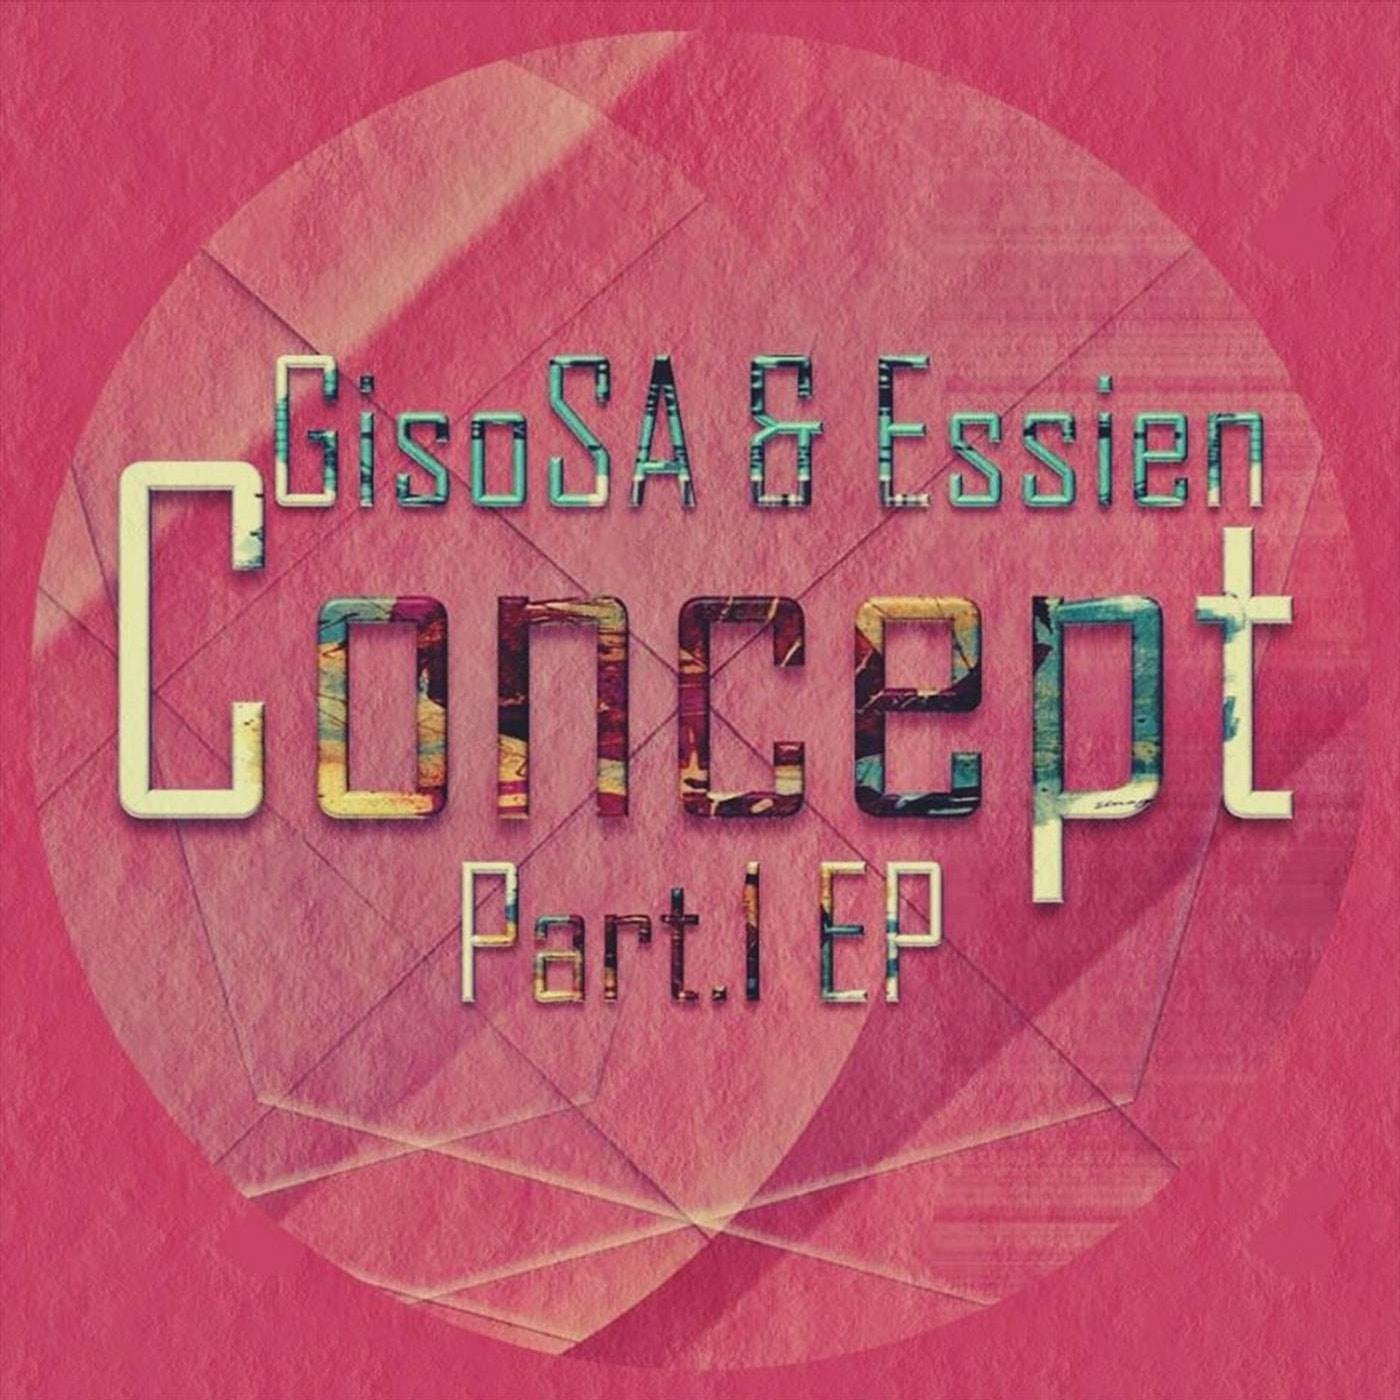 Concept Part 1 EP